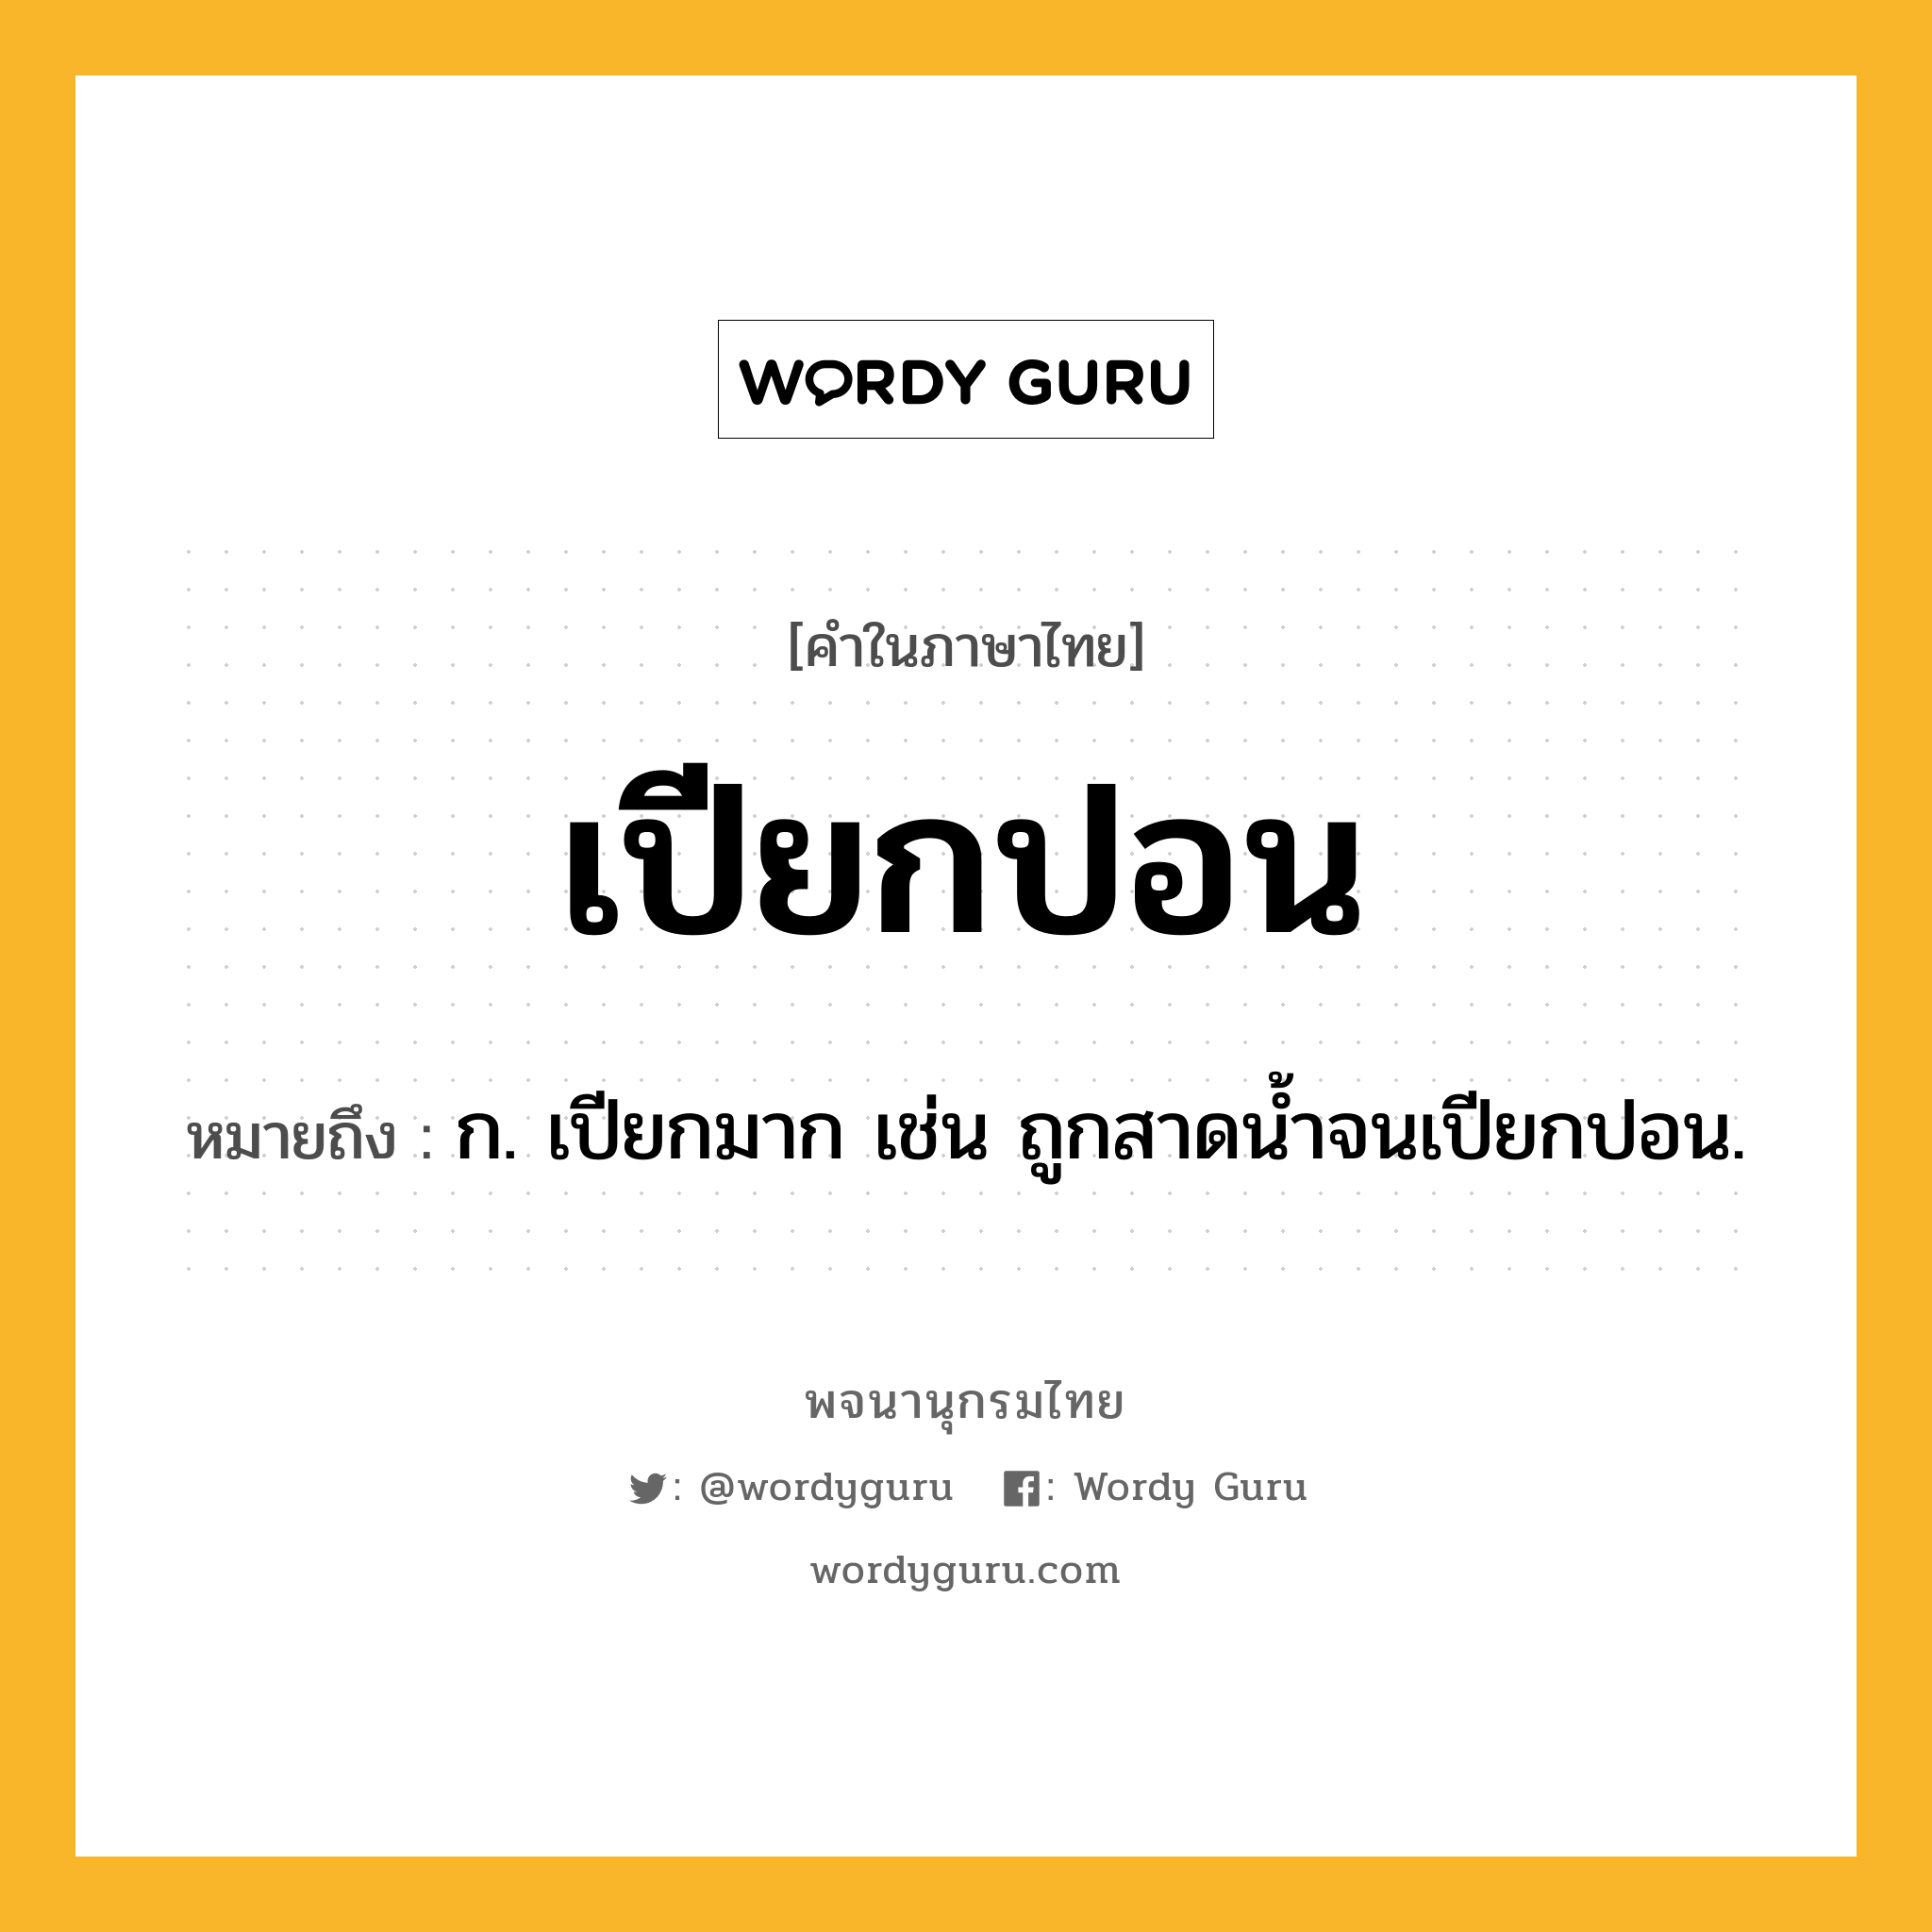 เปียกปอน ความหมาย หมายถึงอะไร?, คำในภาษาไทย เปียกปอน หมายถึง ก. เปียกมาก เช่น ถูกสาดน้ำจนเปียกปอน.